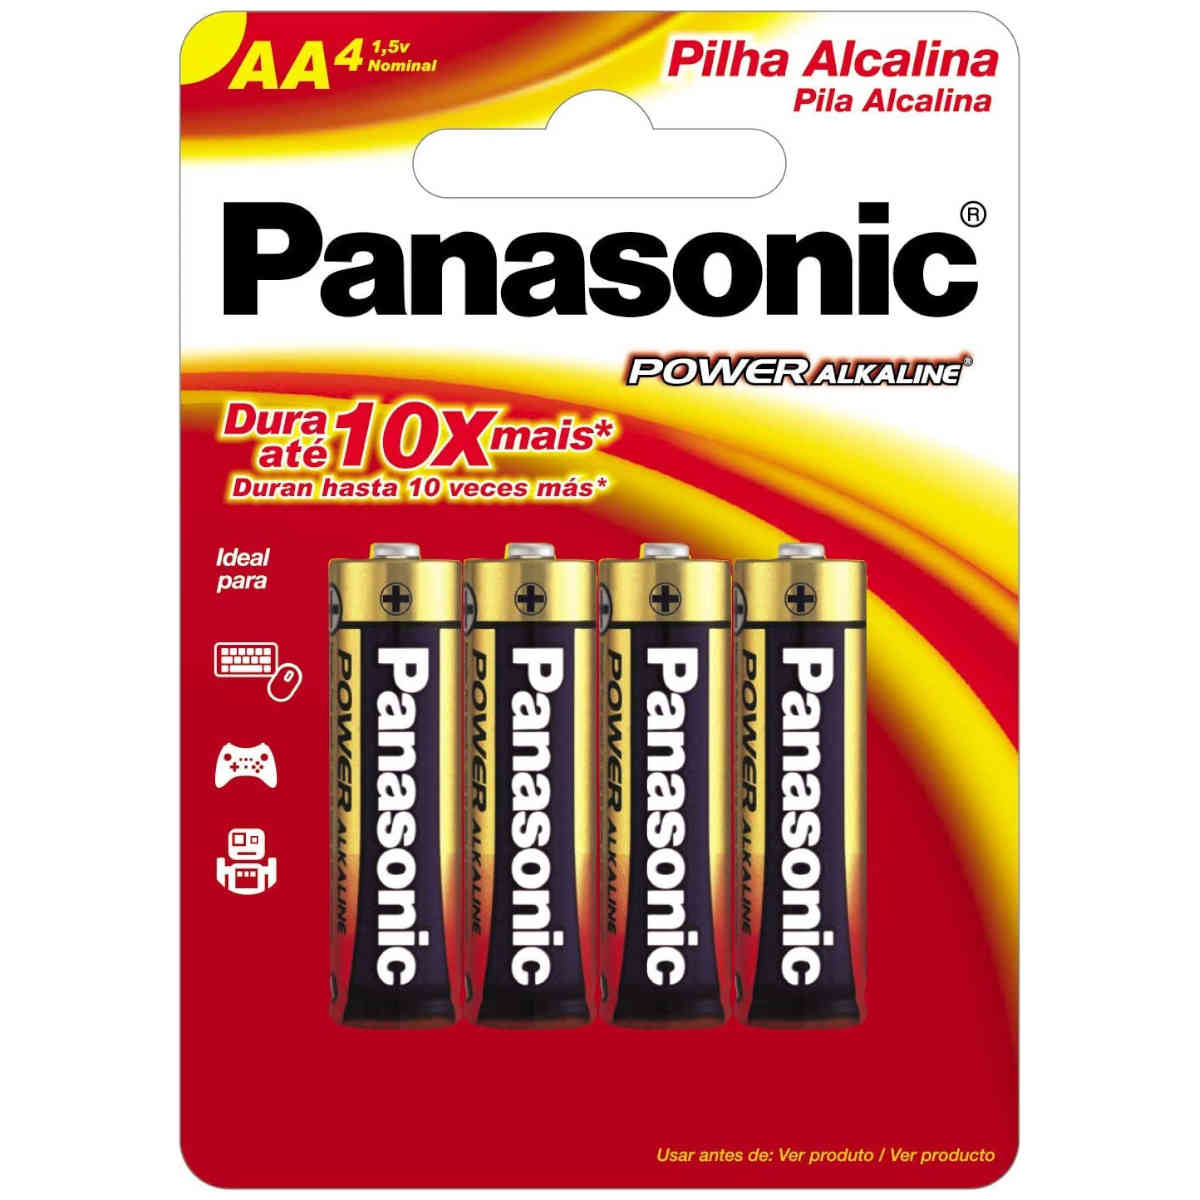 Pilha AA Alcalina Panasonic - Kit com 4 pilhas